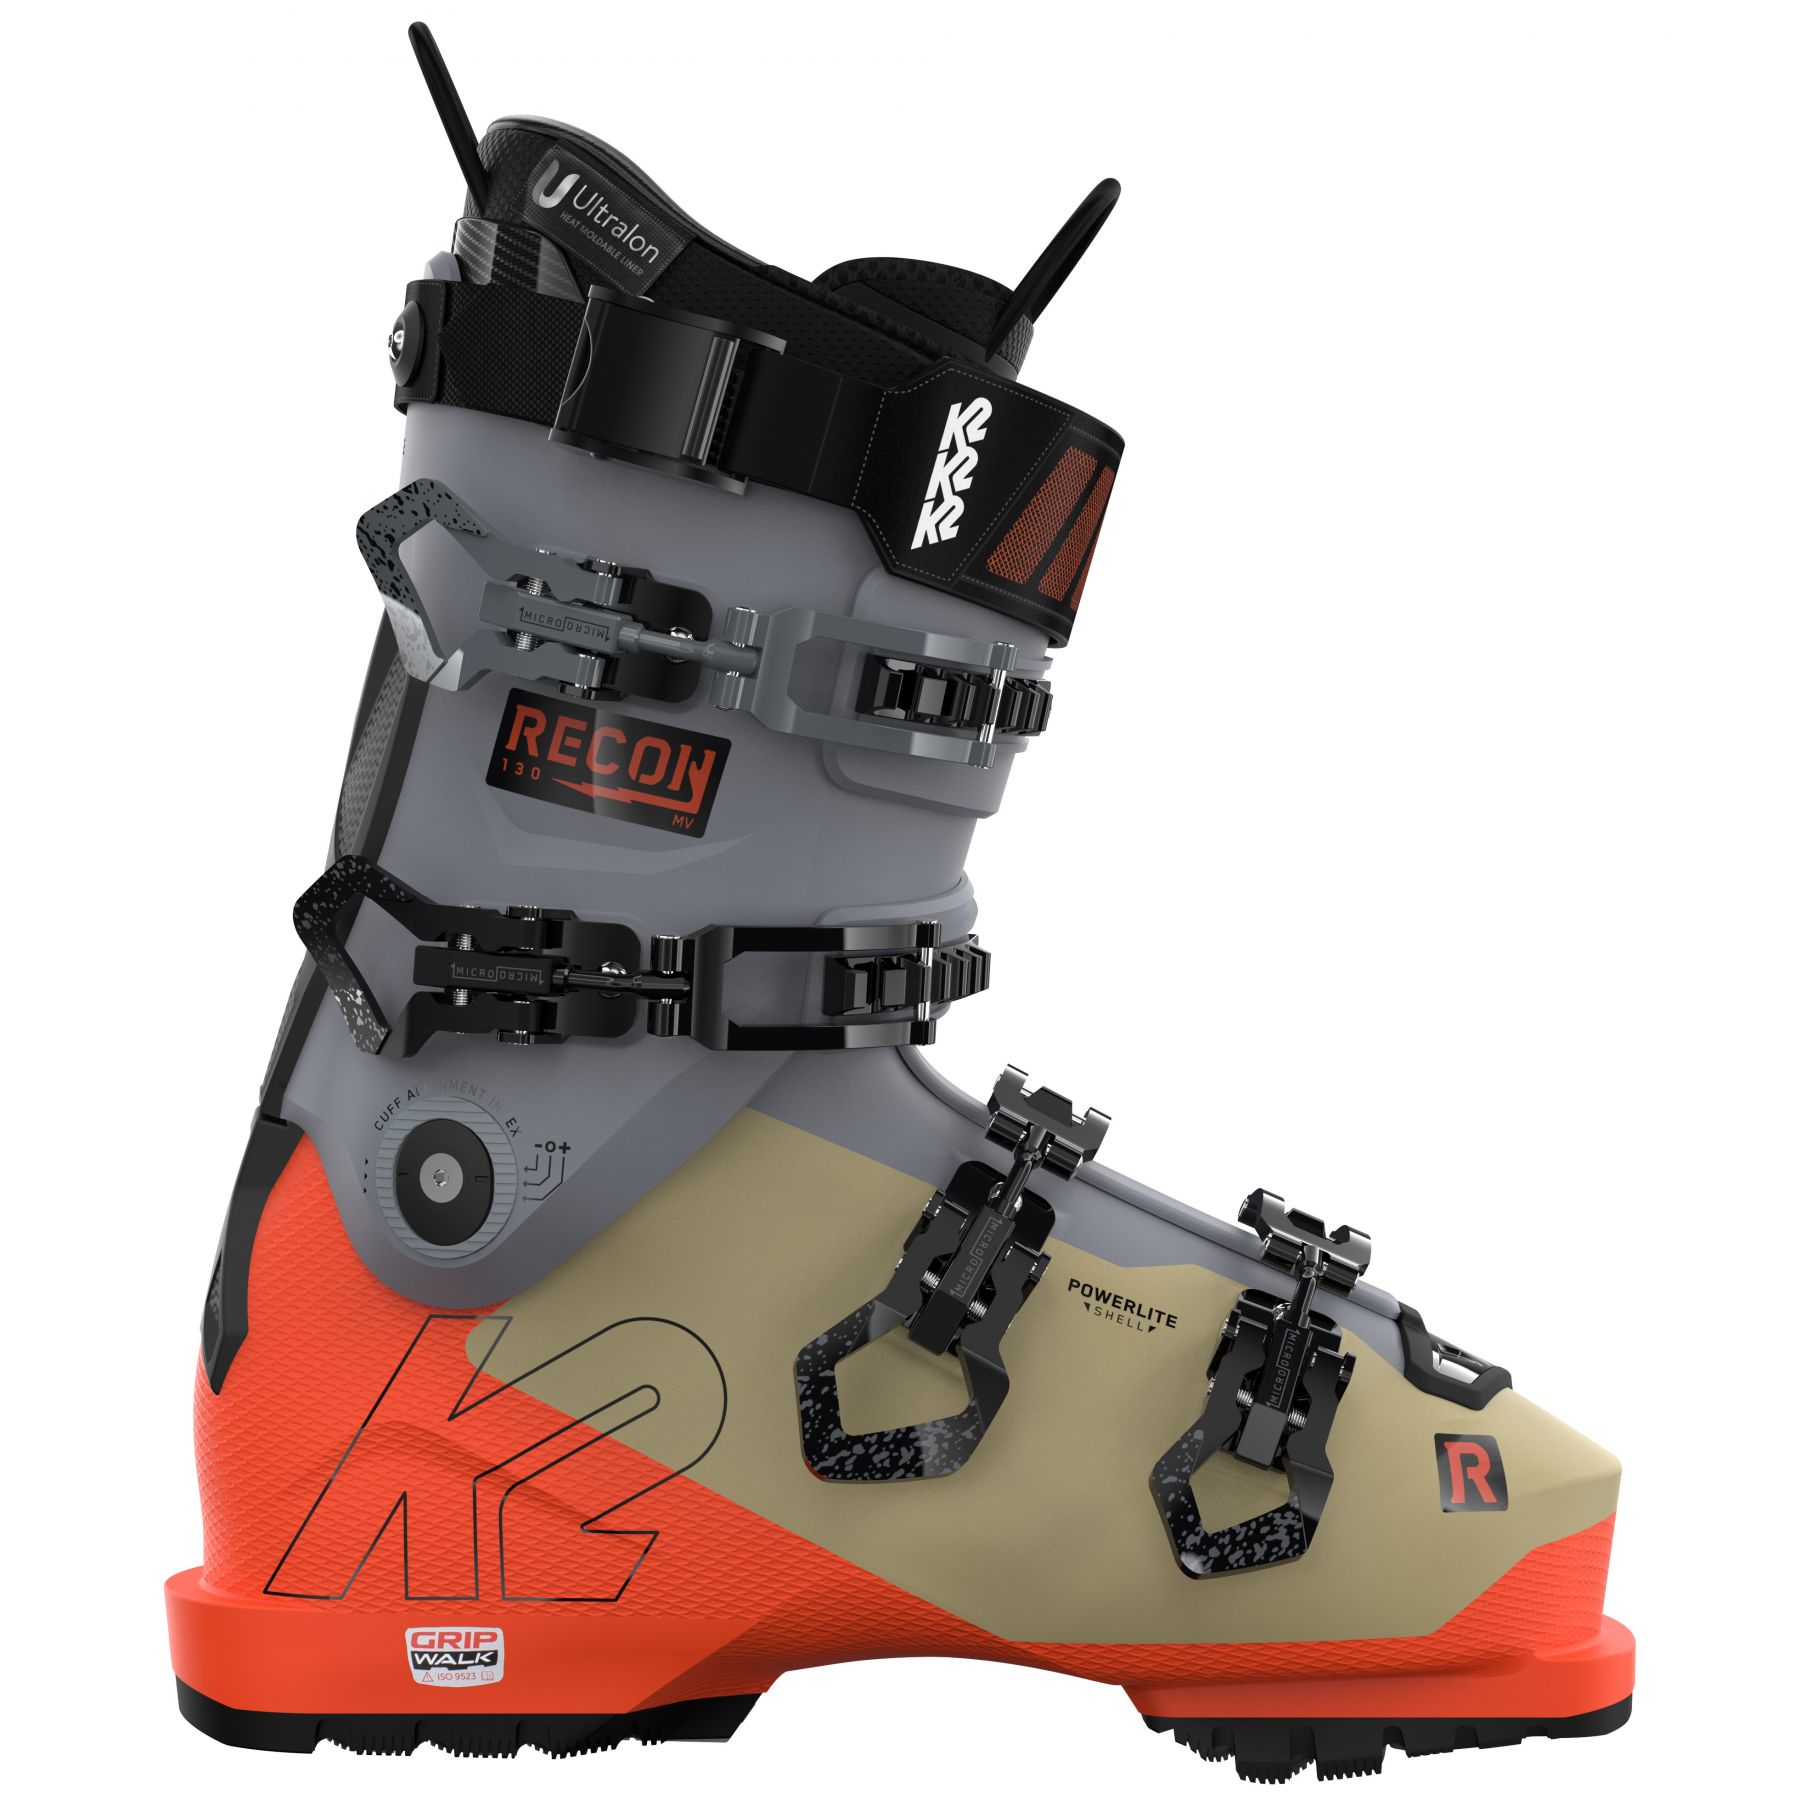 Billede af K2 Recon 130 LV, skistøvler, herre, orange hos Skisport.dk